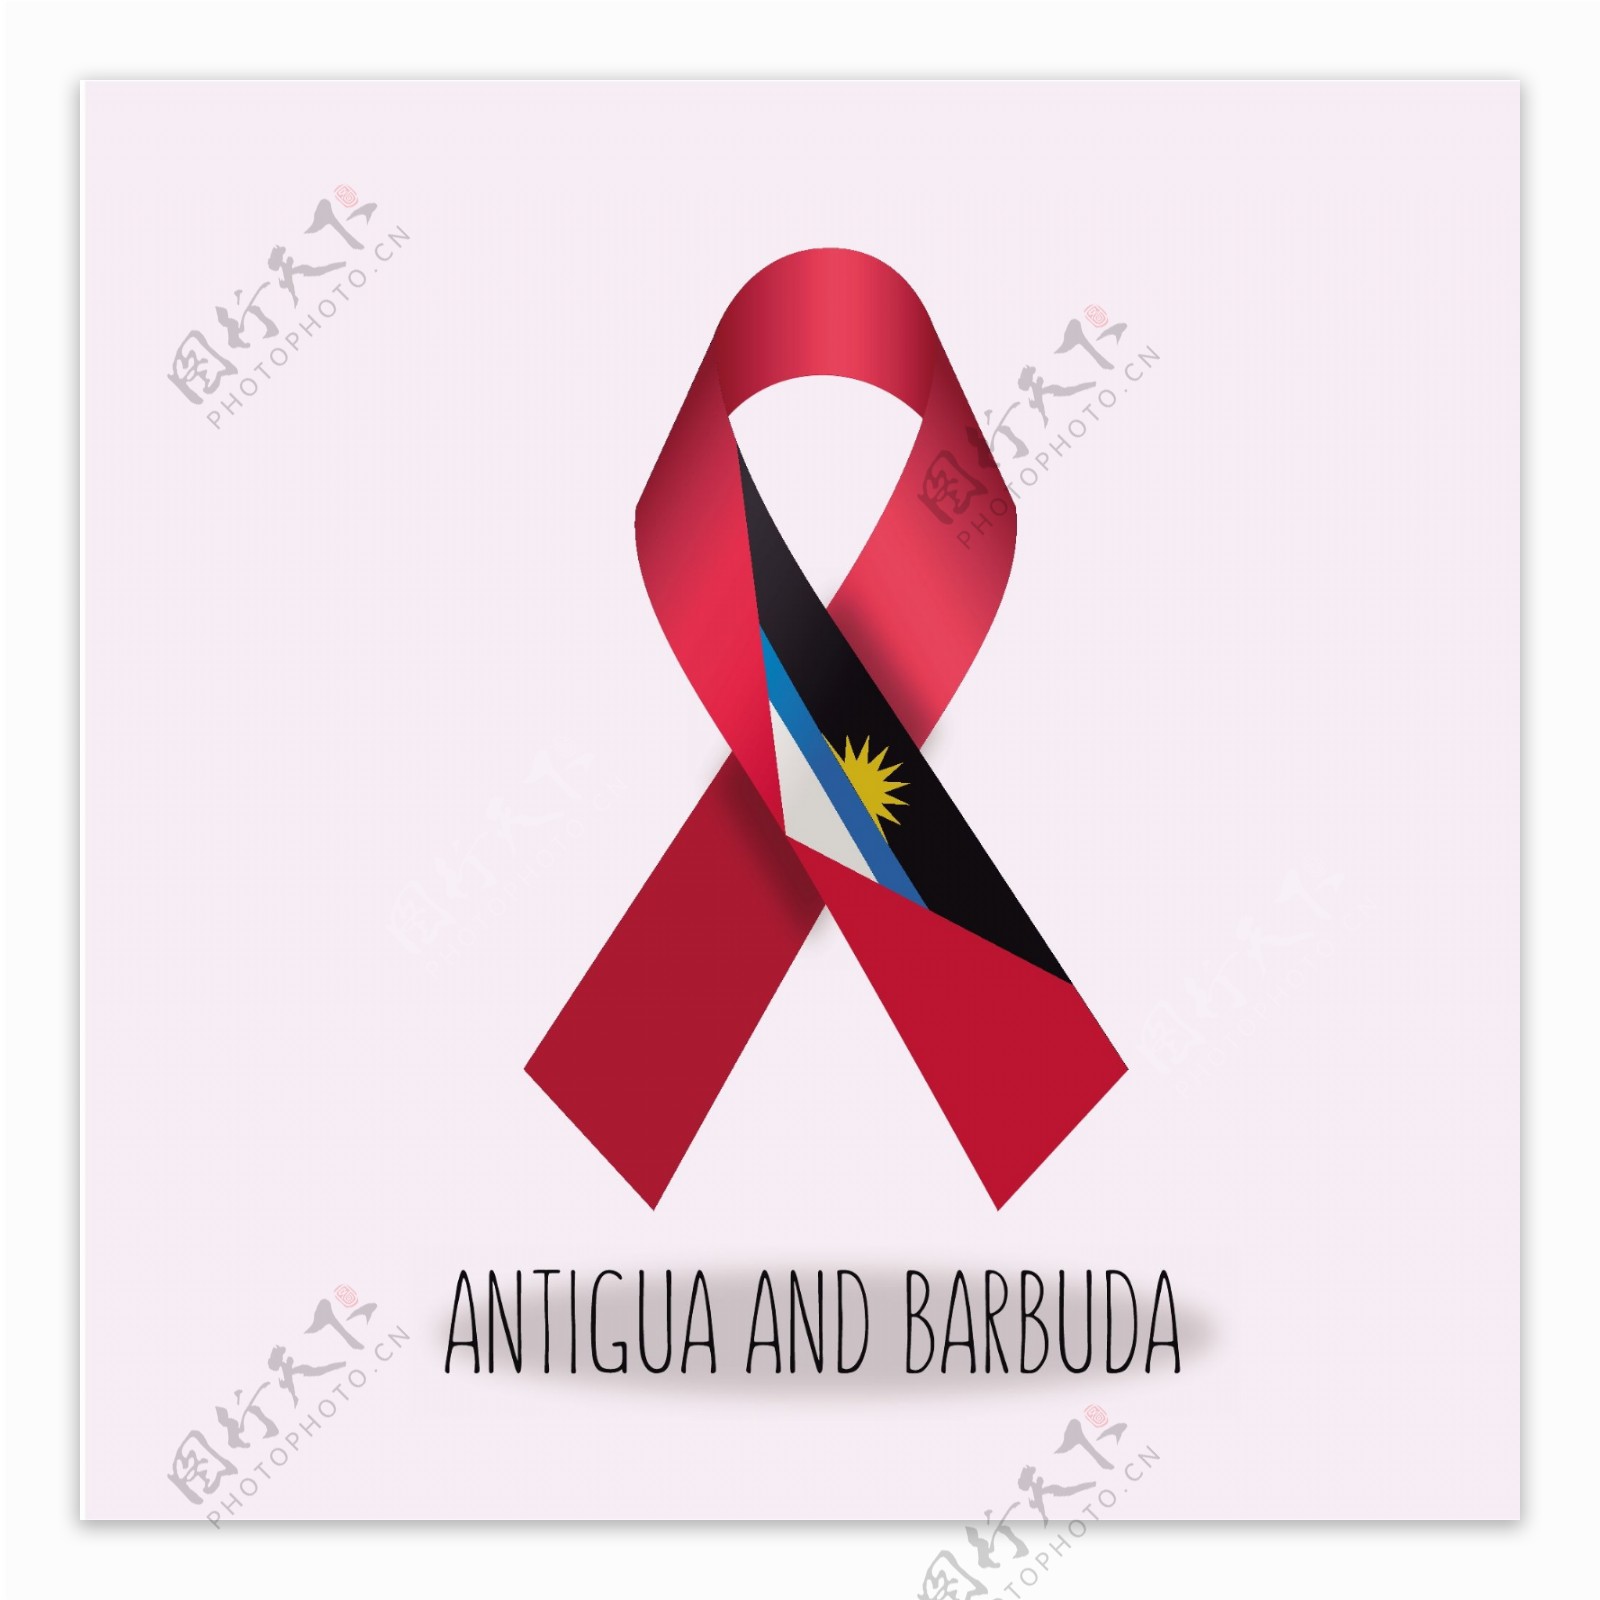 安提瓜巴布达国旗丝带设计